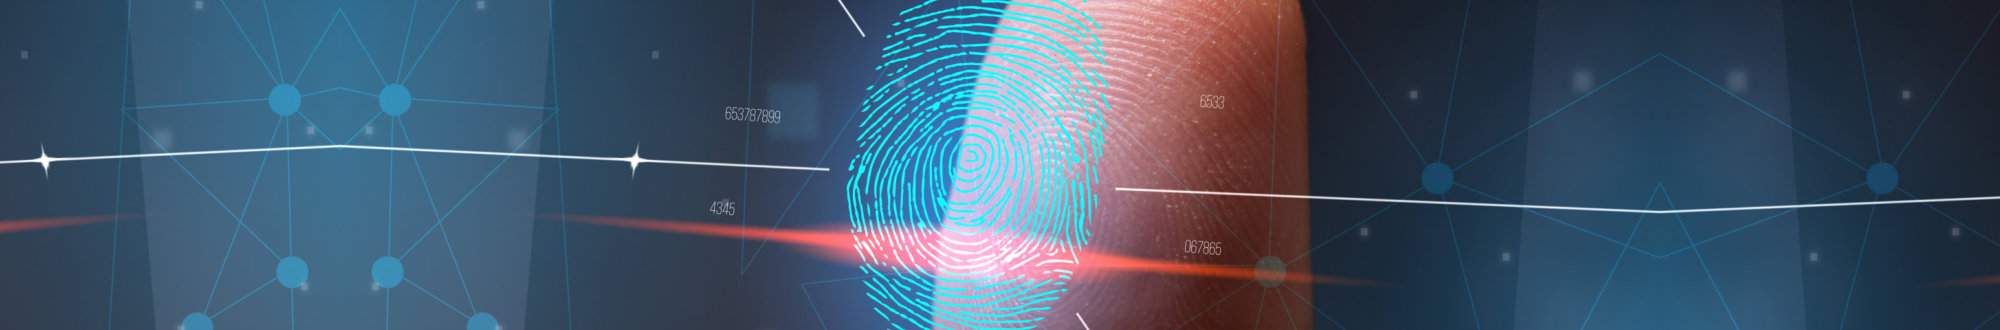 scanning of the fingerprint